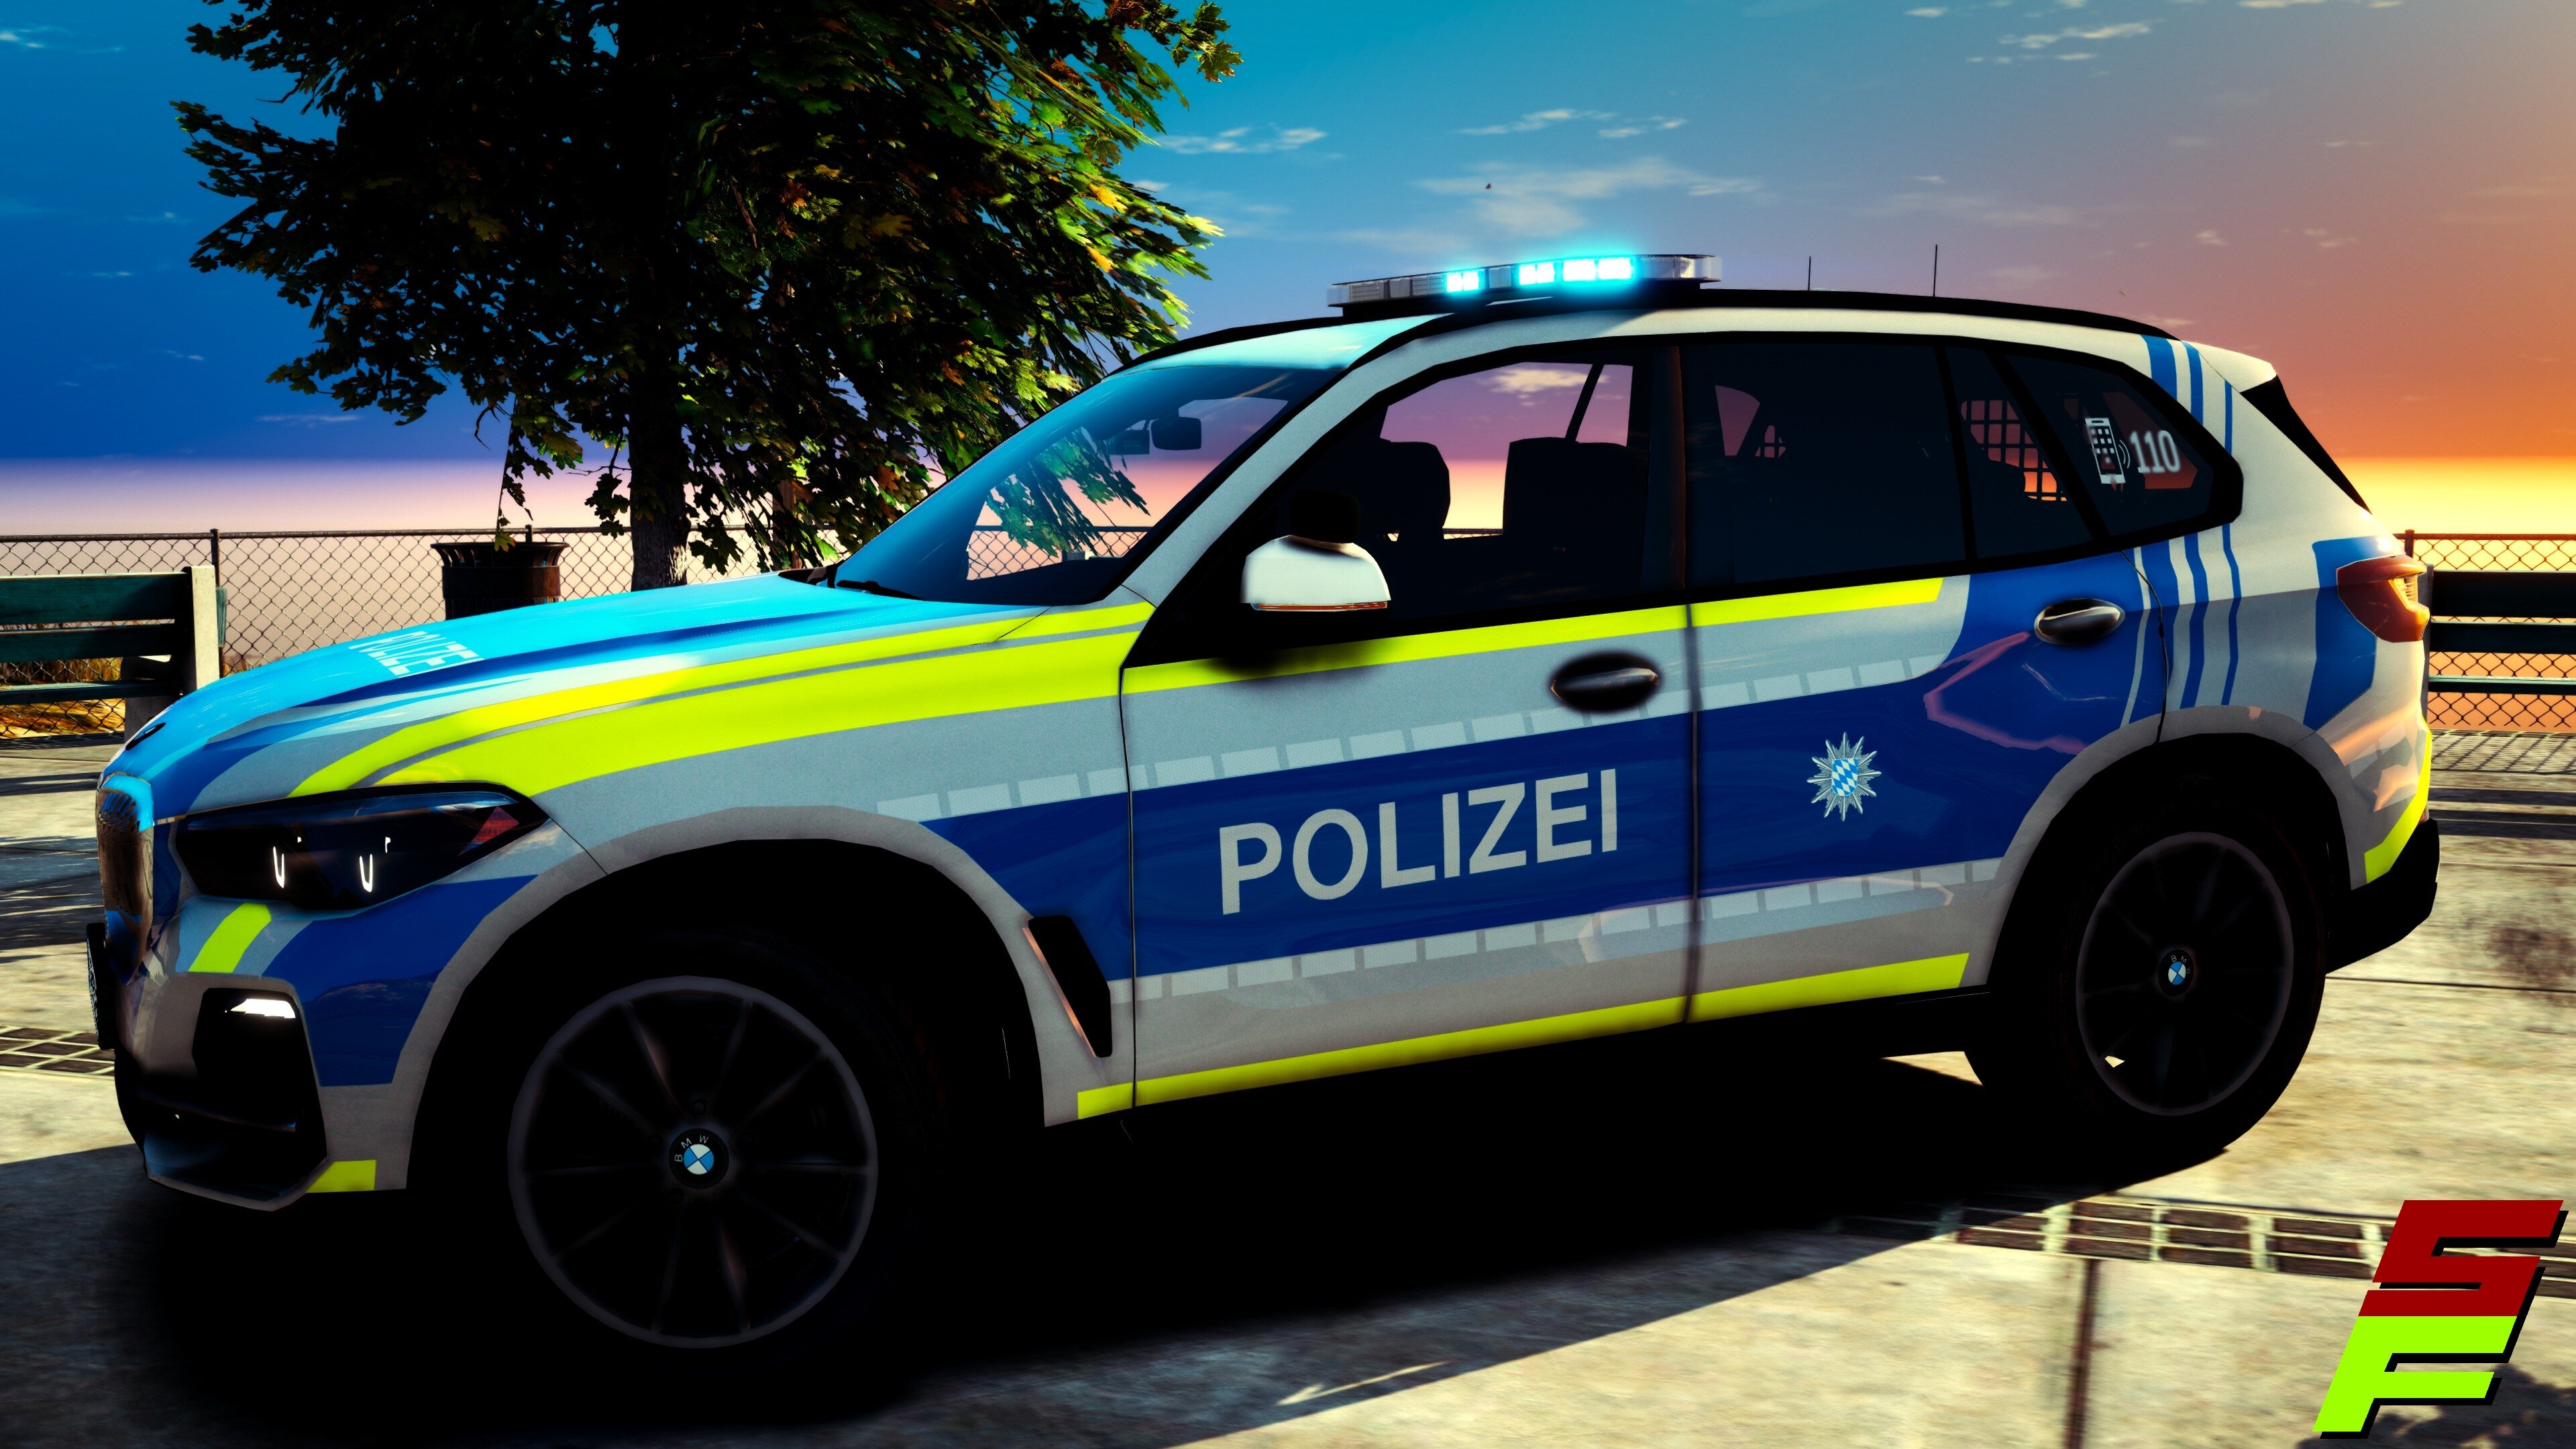 2020 BMW X5 Polizei Bayern - Vehicle Textures 